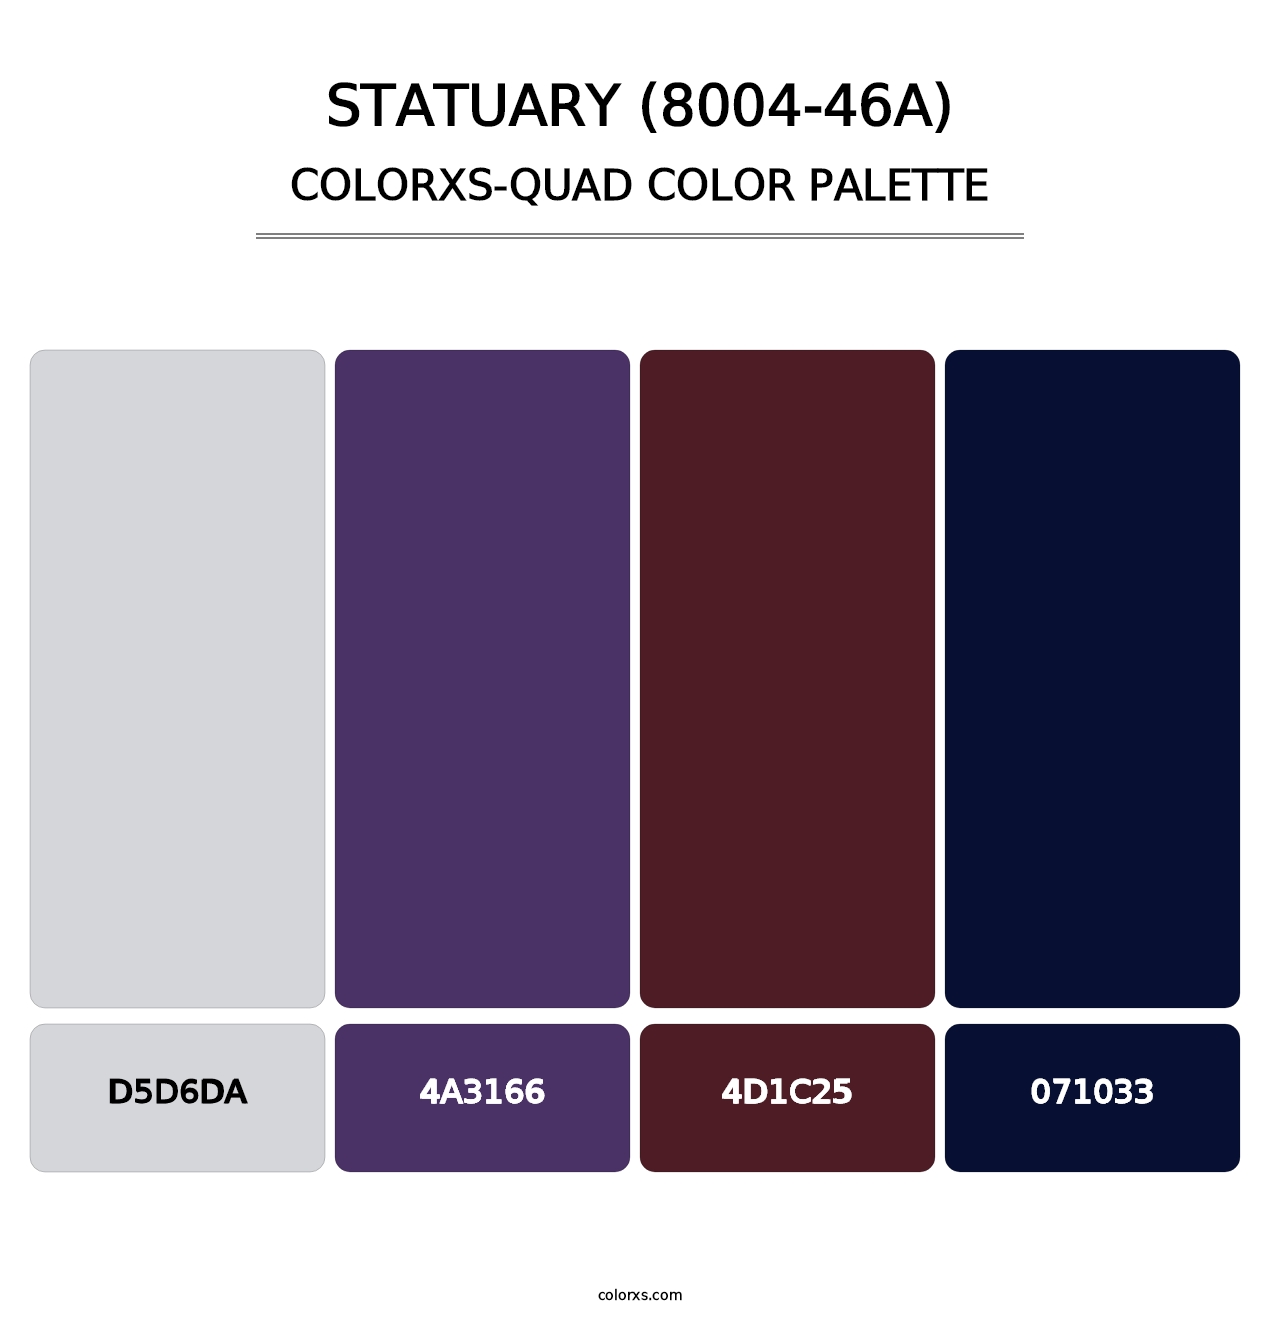 Statuary (8004-46A) - Colorxs Quad Palette